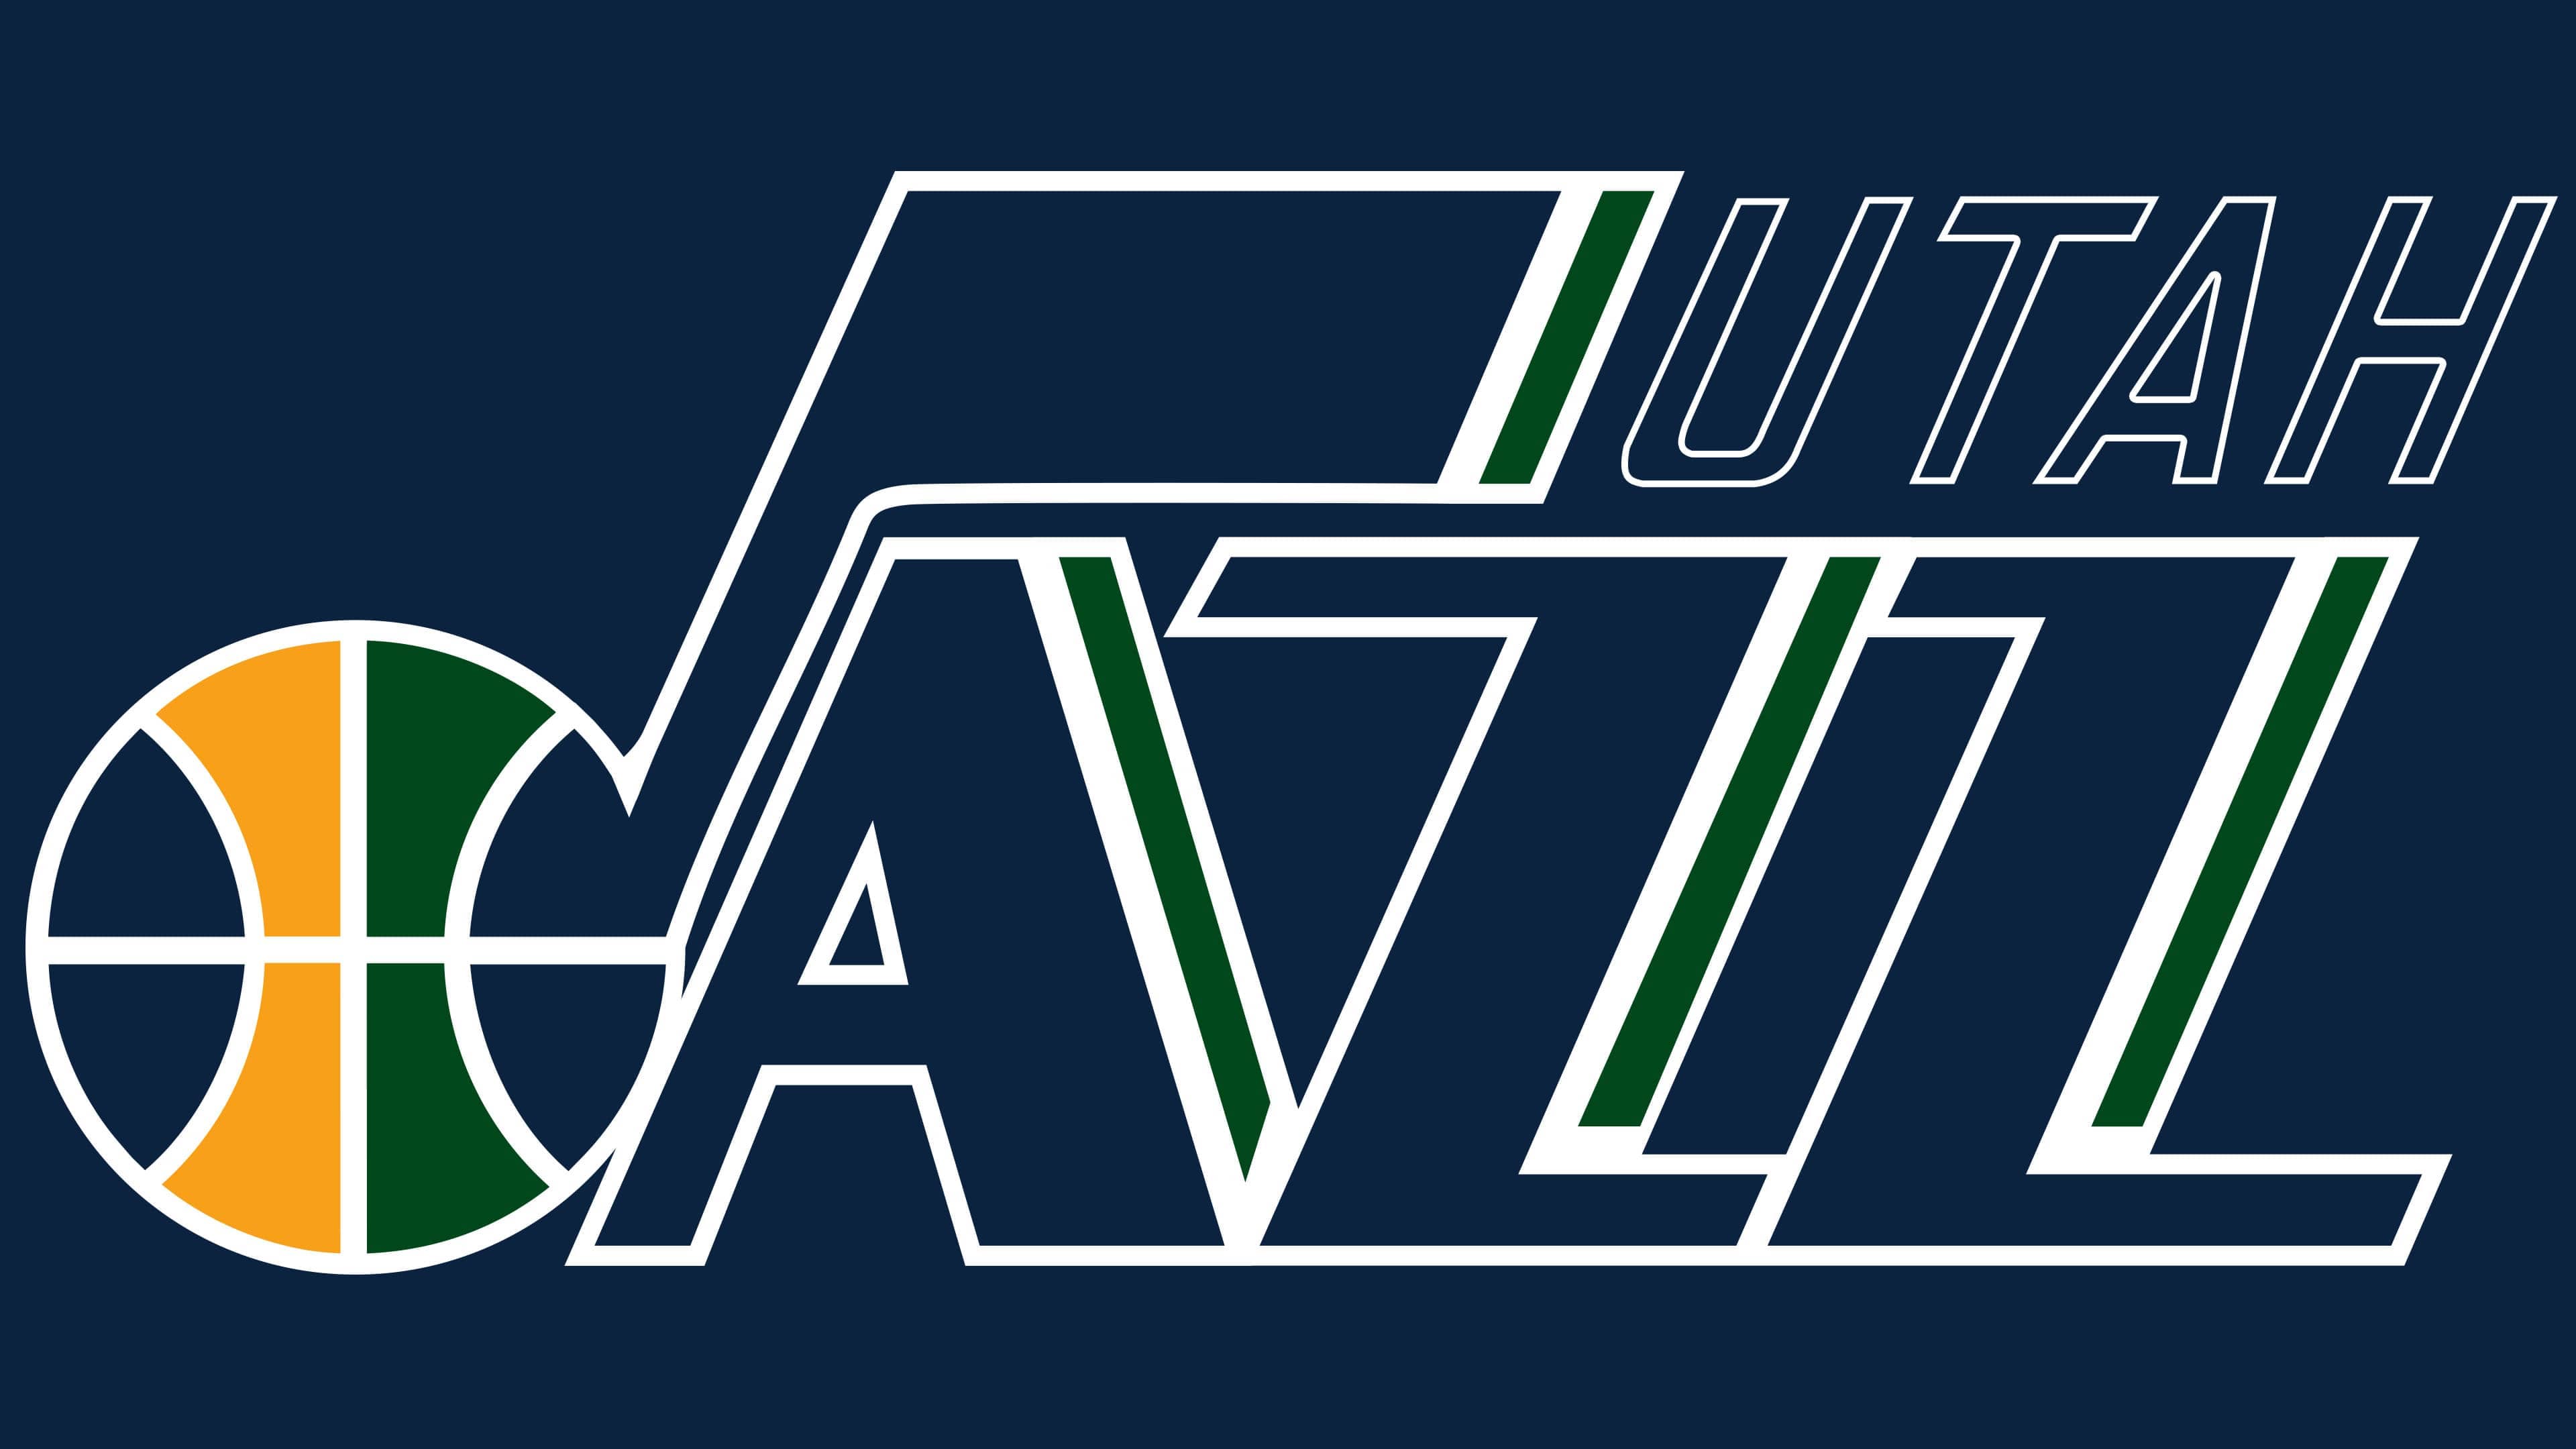 utah jazz note logo